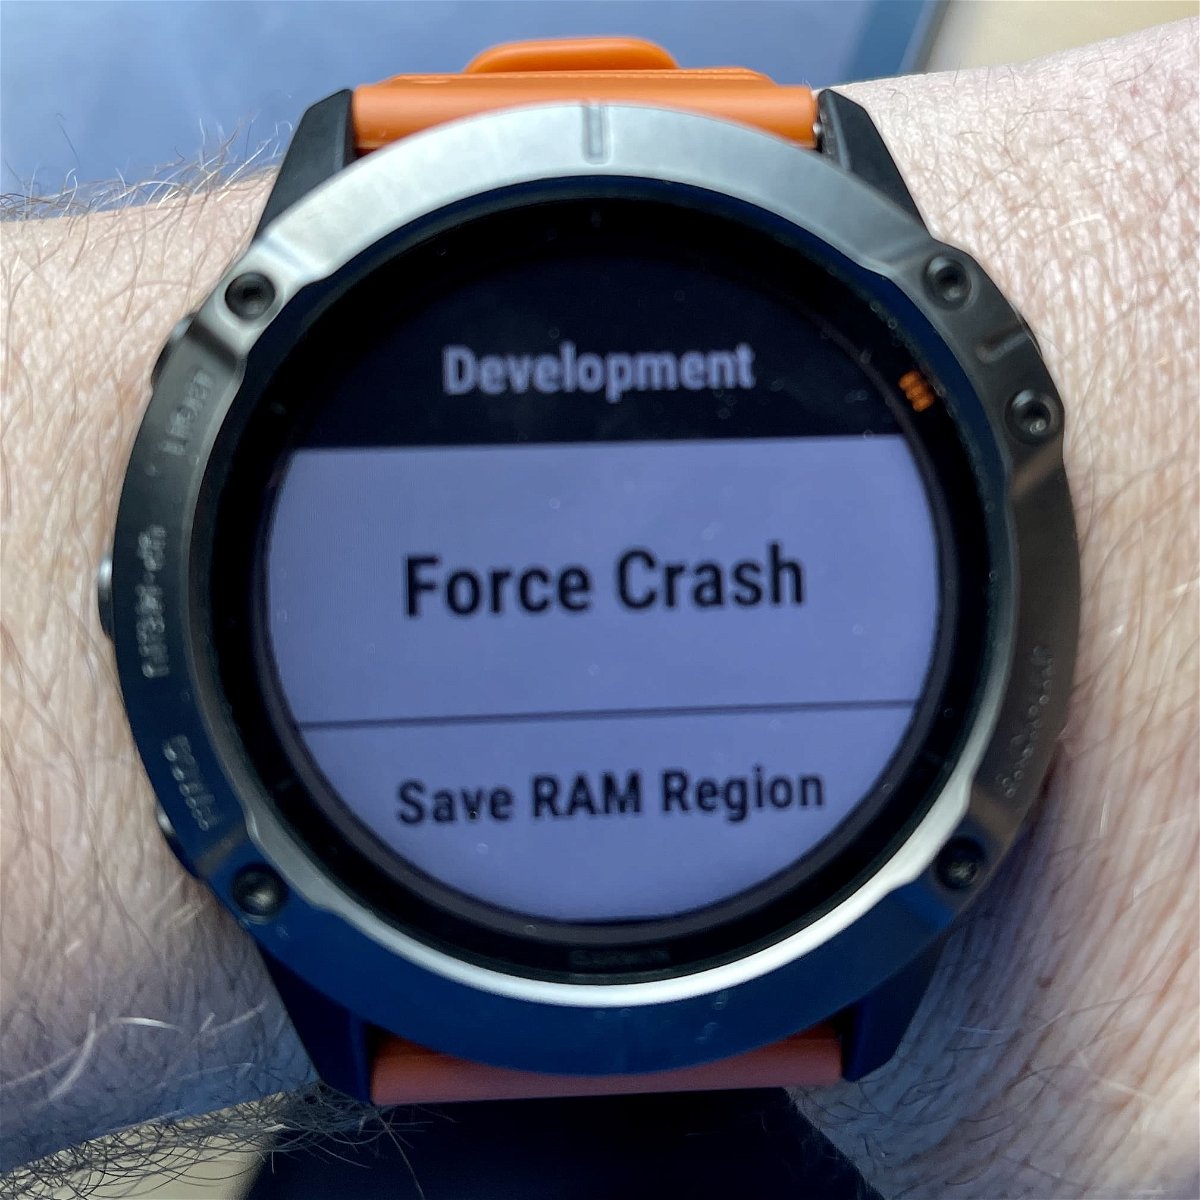 Developer-Modus bei Garmin-Uhren aktivieren